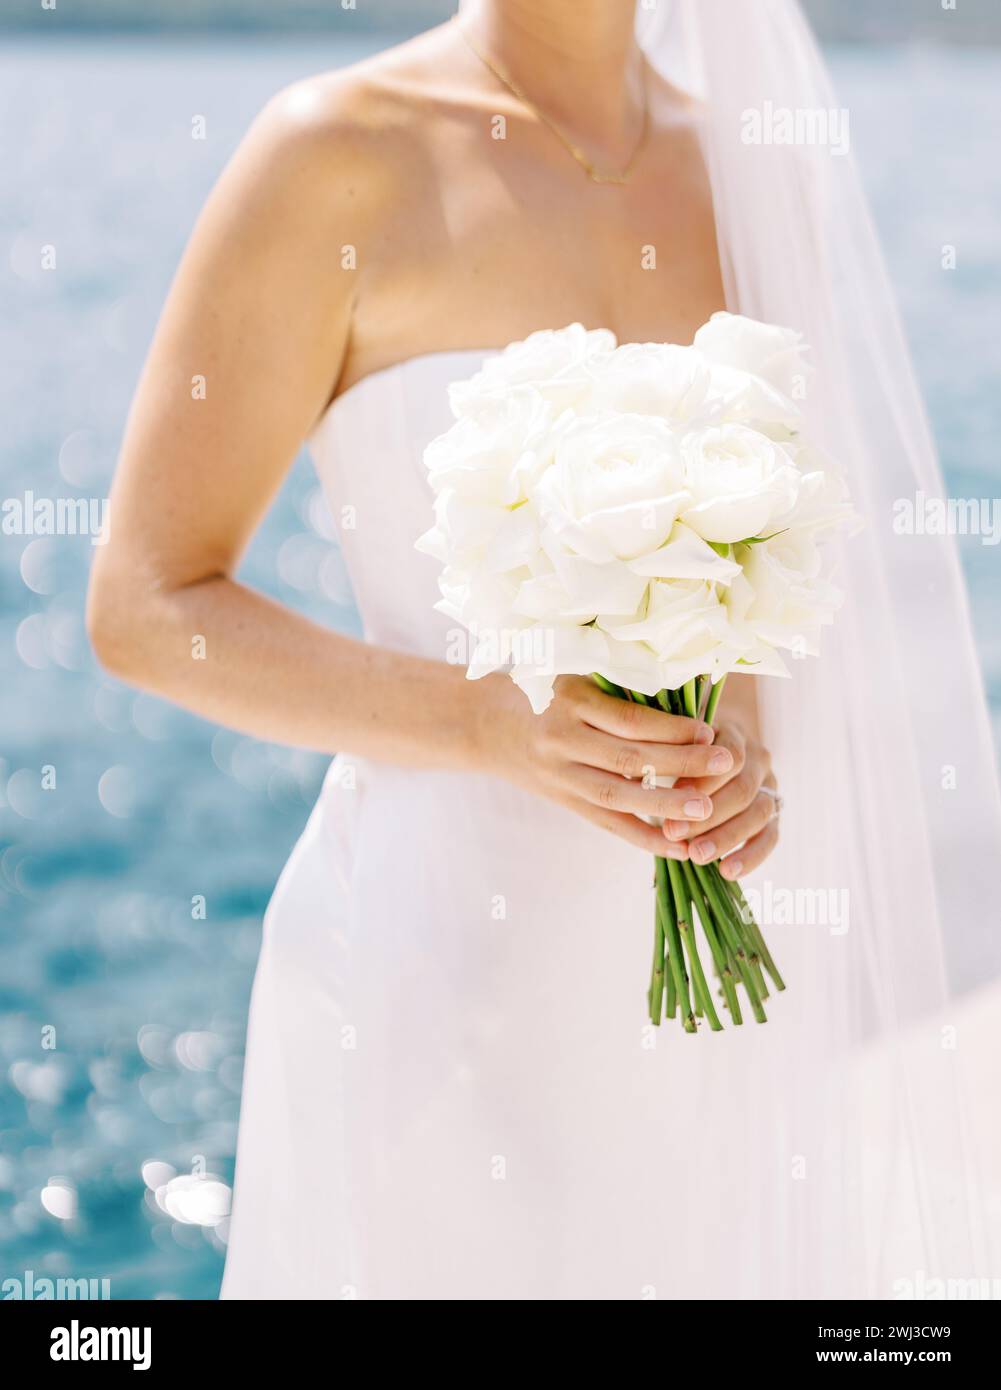 Blumenstrauß in den Händen einer Braut, die am Meer steht. Abgeschnitten. Gesichtslos Stockfoto